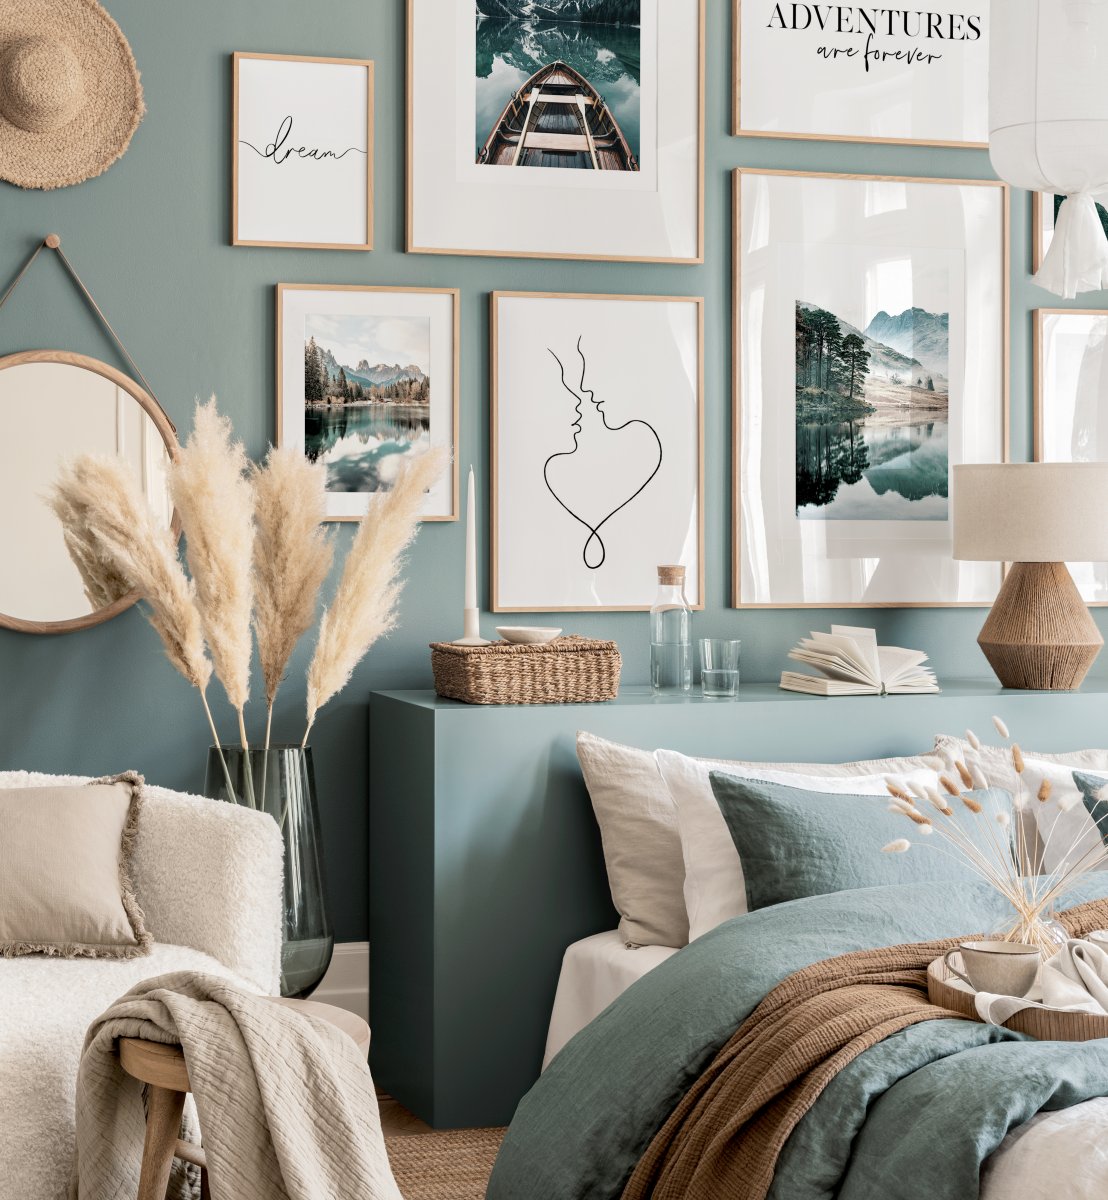 Mỗi sắc thái của màu xanh lam đem đến cảm xúc khác nhau cho người nhìn. Chẳng hạn như phòng ngủ tone xanh cổ vịt nhạt này, trông rất thời trang đúng không nào?